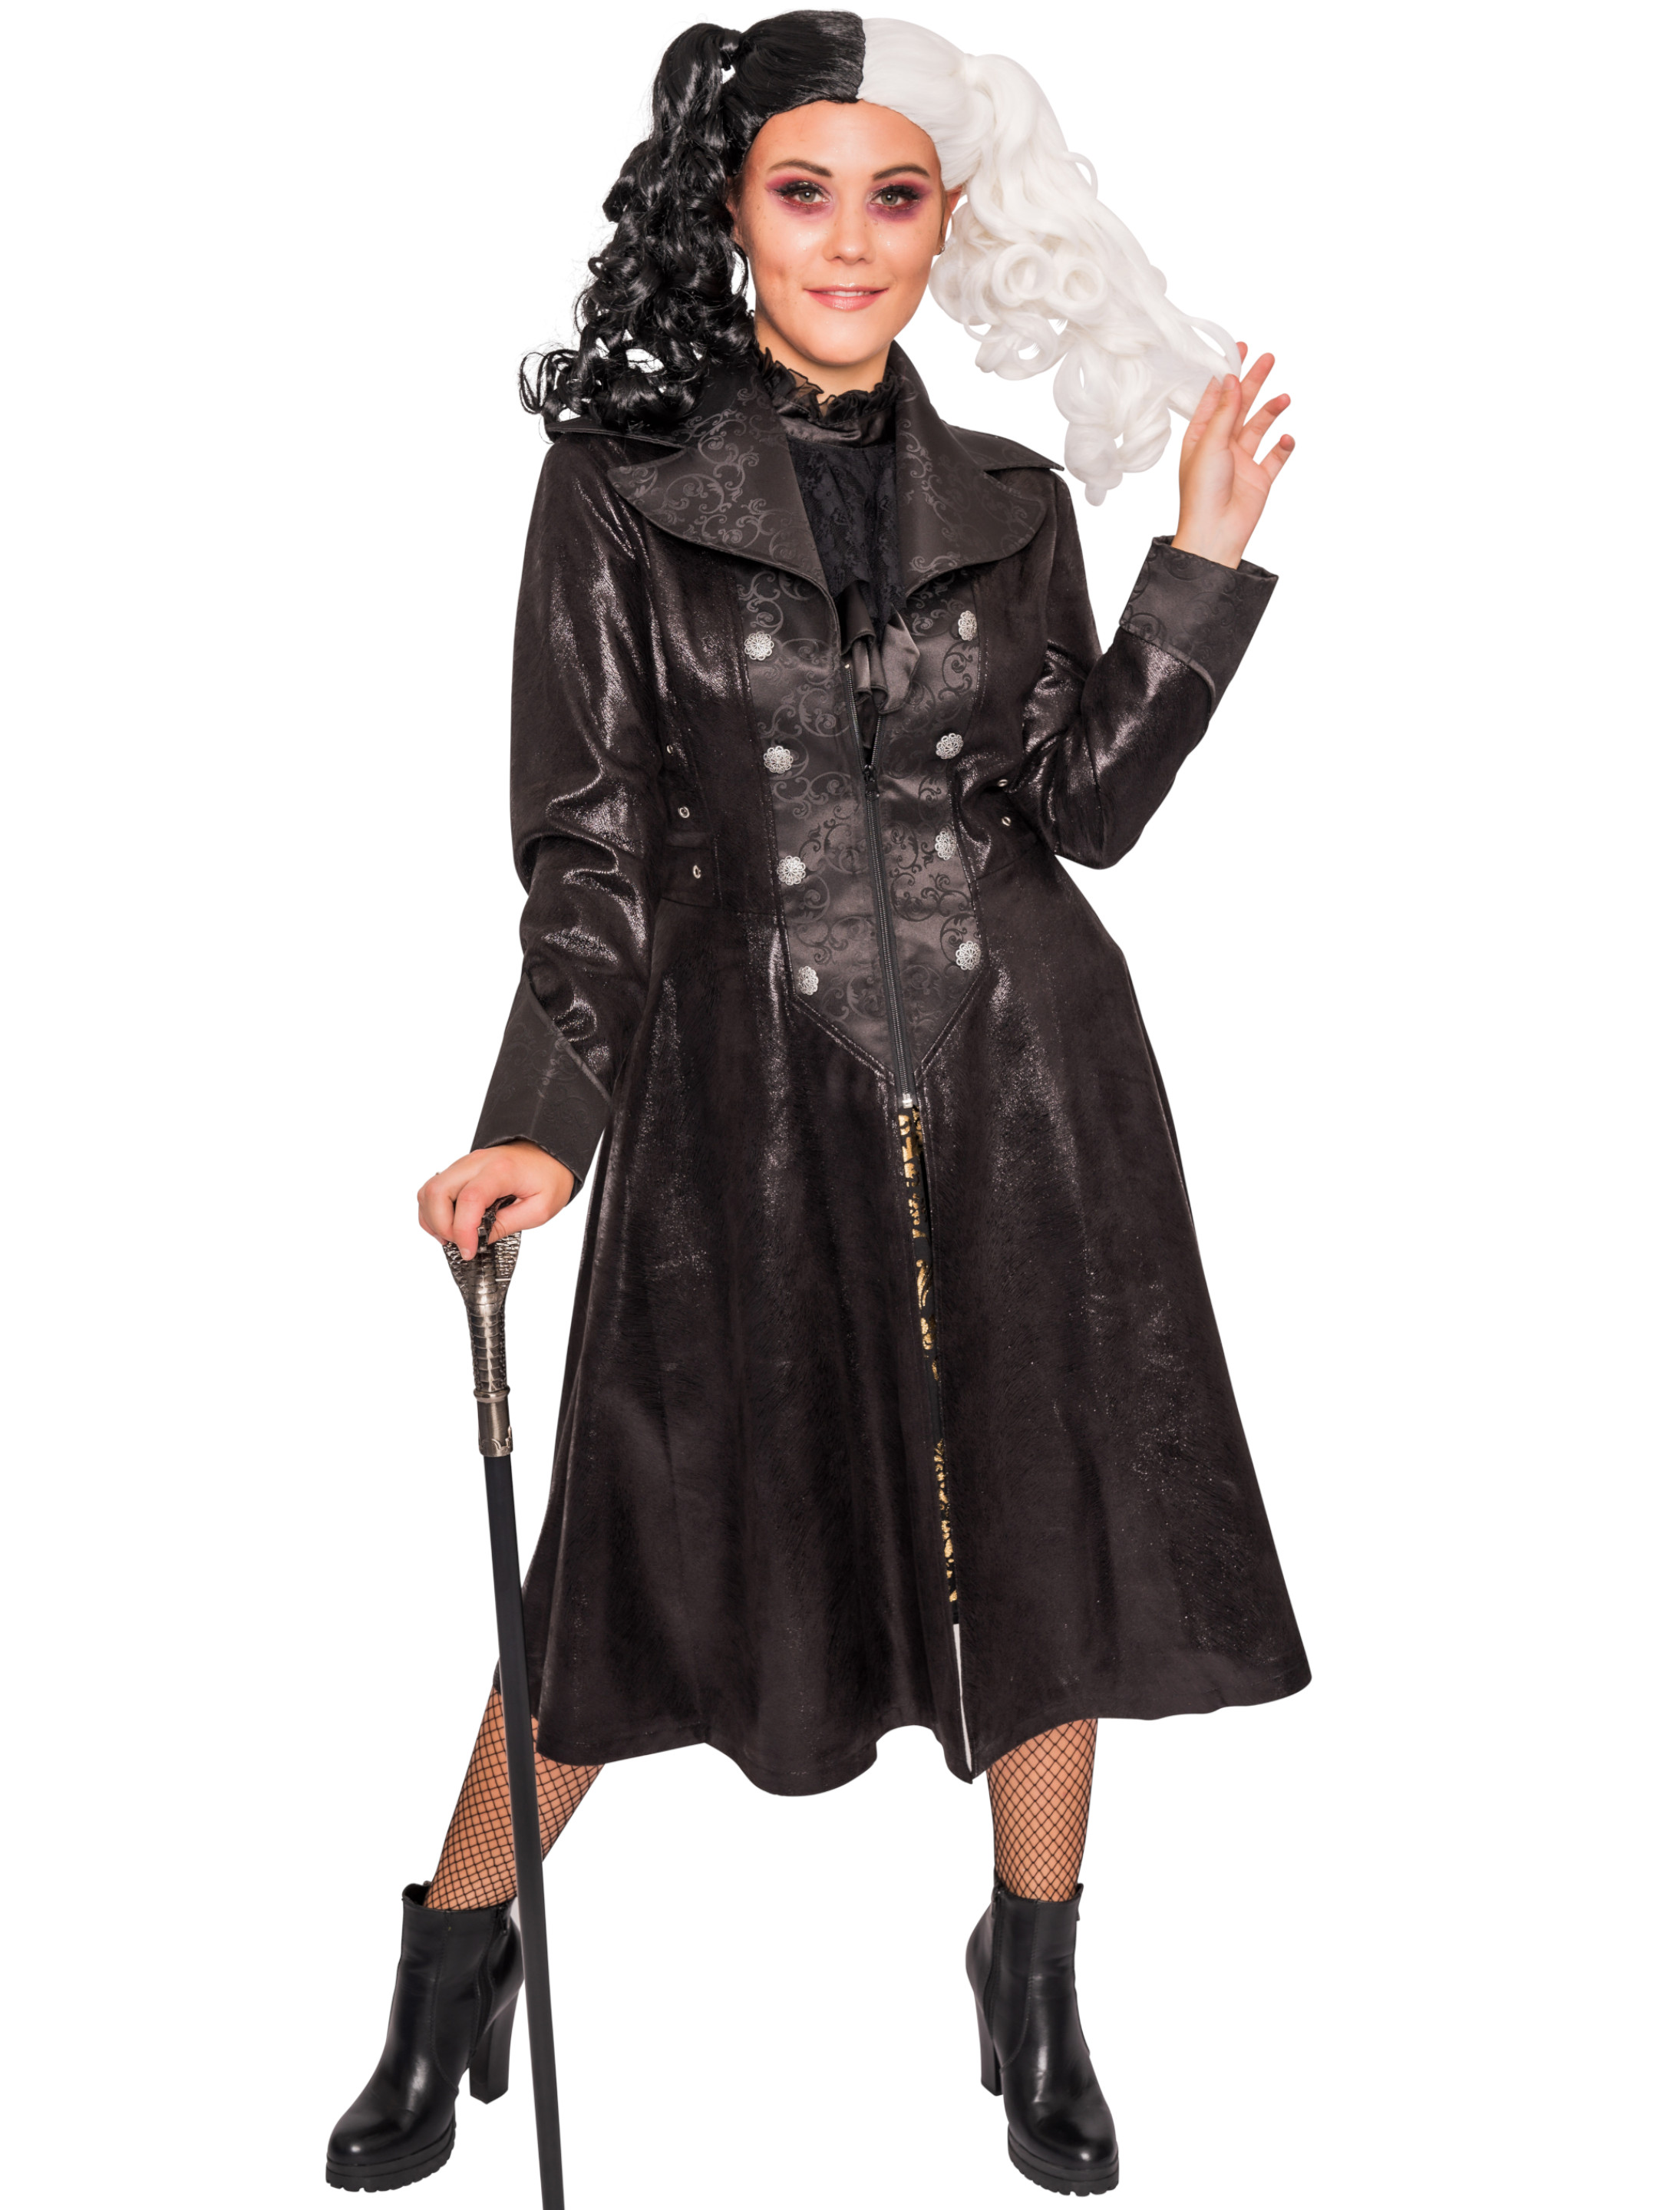 Mantel Steampunk Damen schwarz S